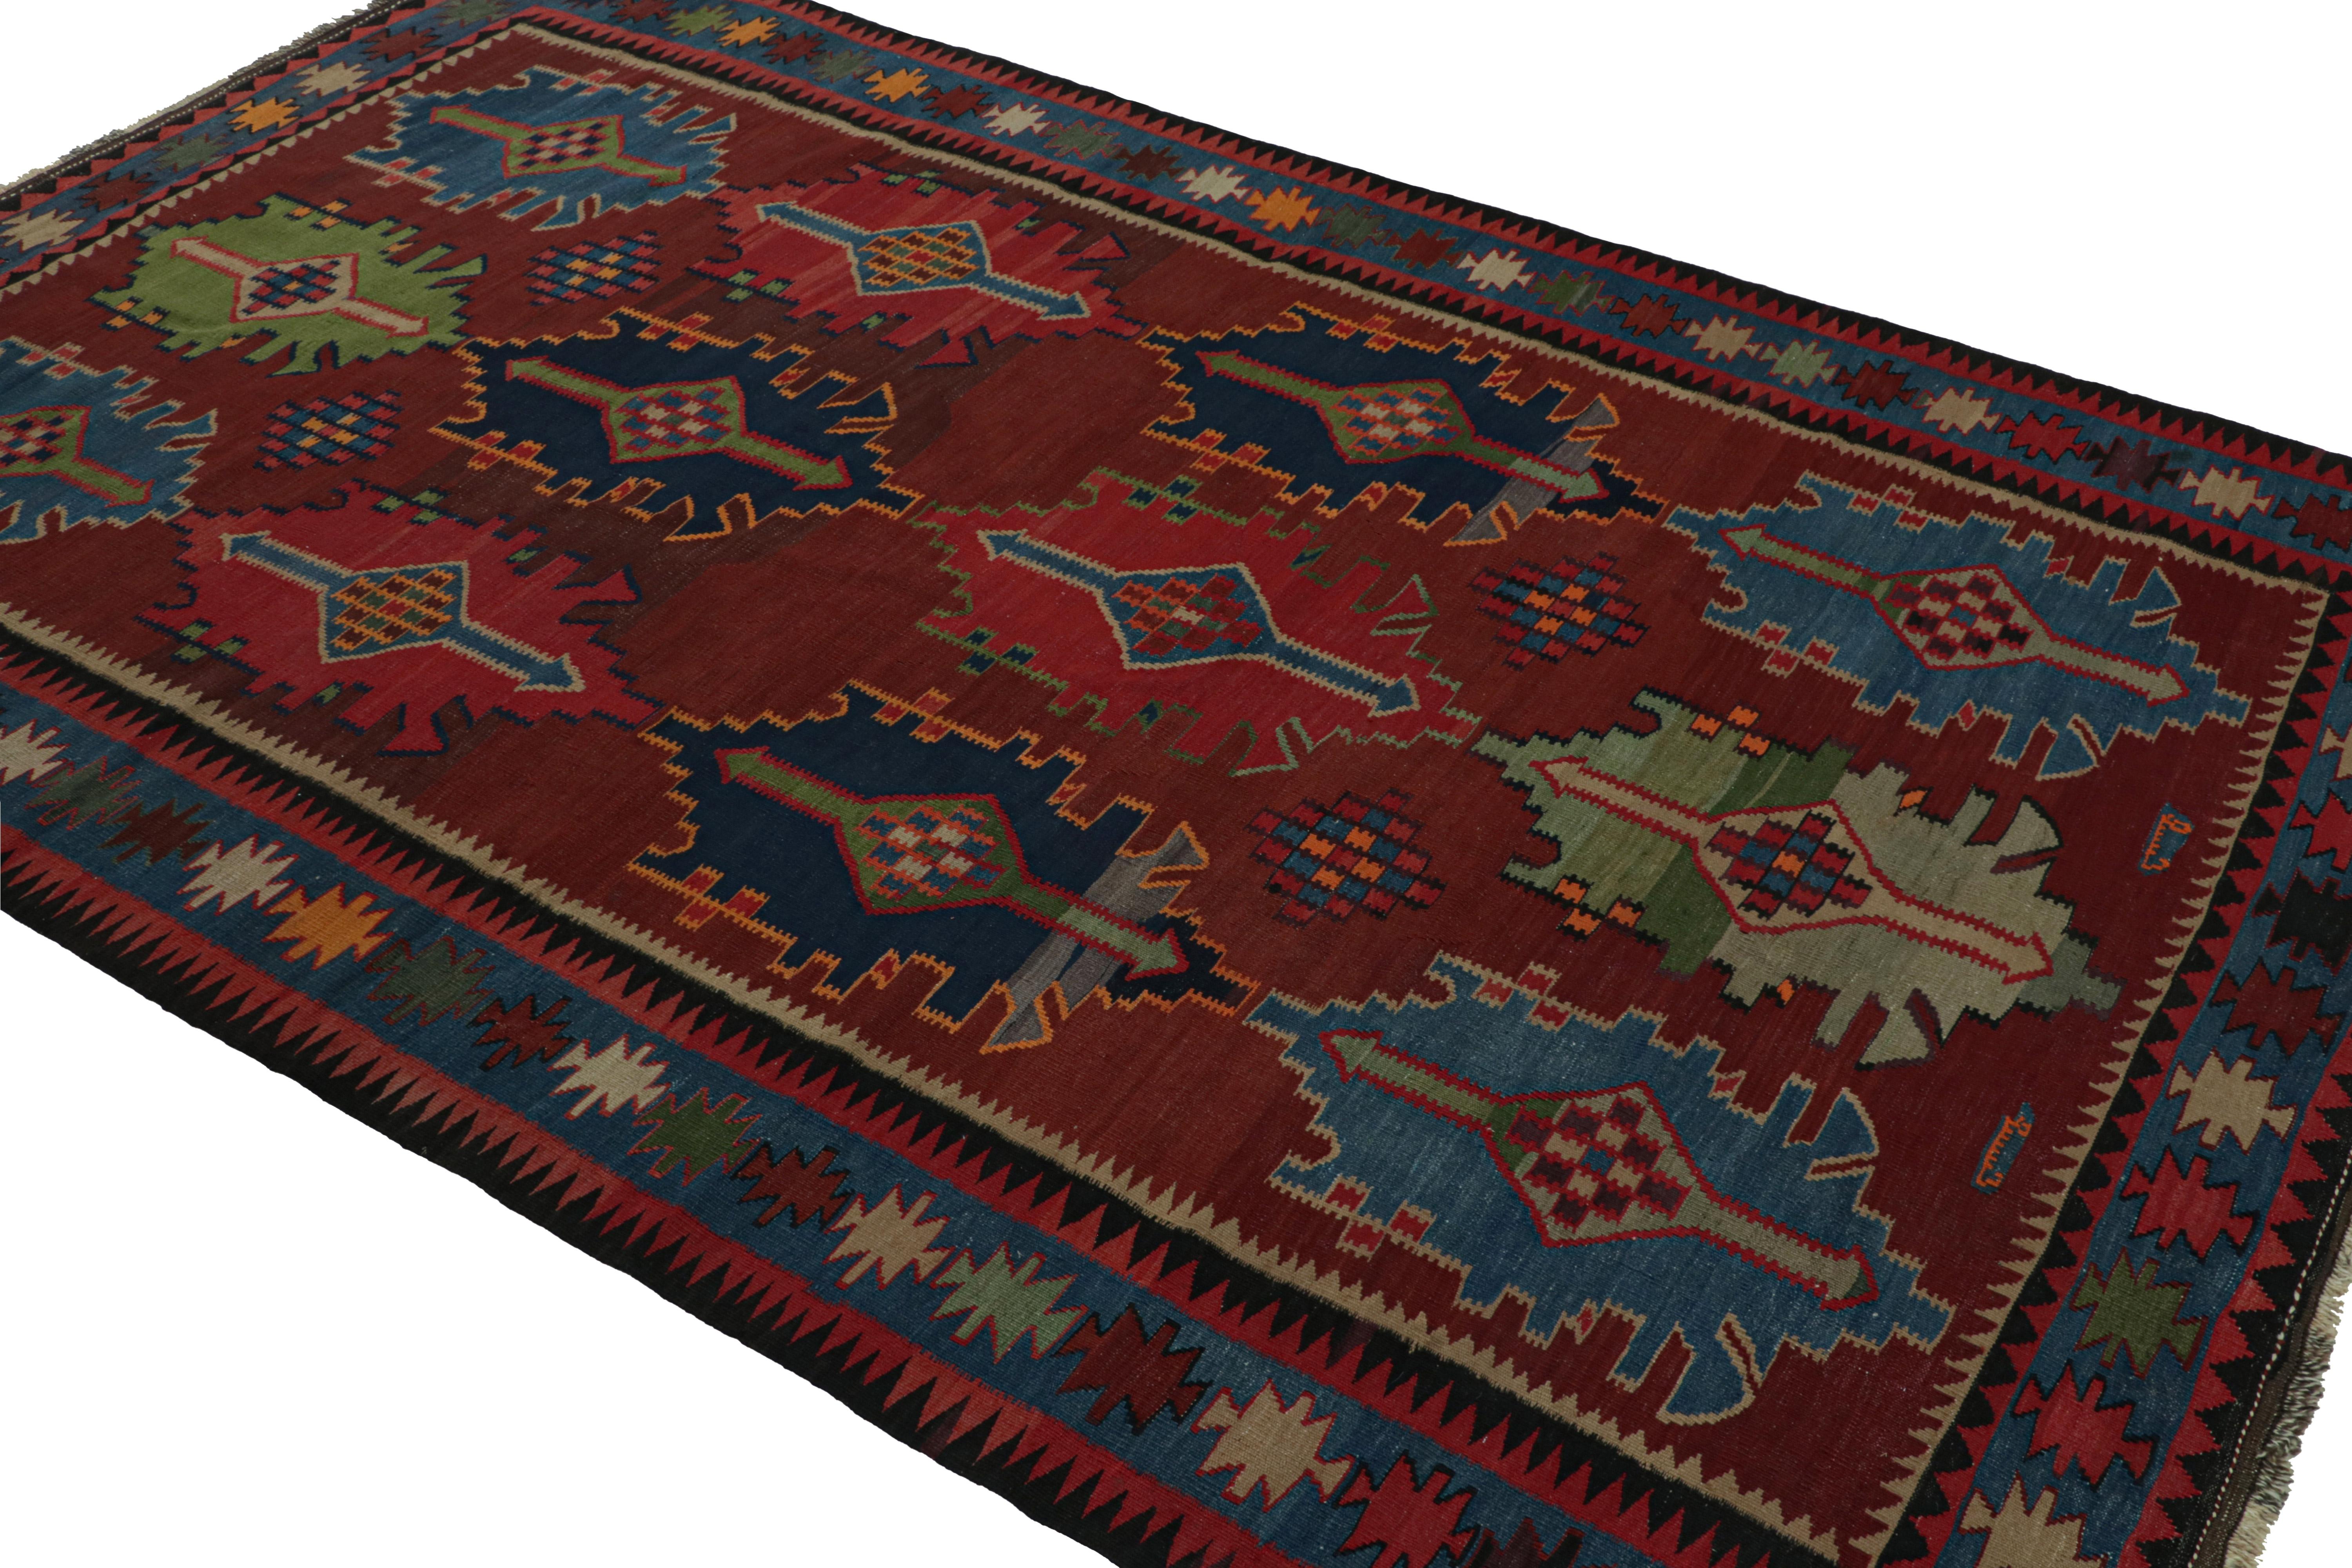 Exemplaire du design nomade, ce tapis kilim tribal afghan vintage 6x9, tissé à la main en laine avec un champ rouge, présente un design rare avec des motifs à grande échelle et des couleurs vibrantes. 

Sur le design : 

Les connaisseurs admireront